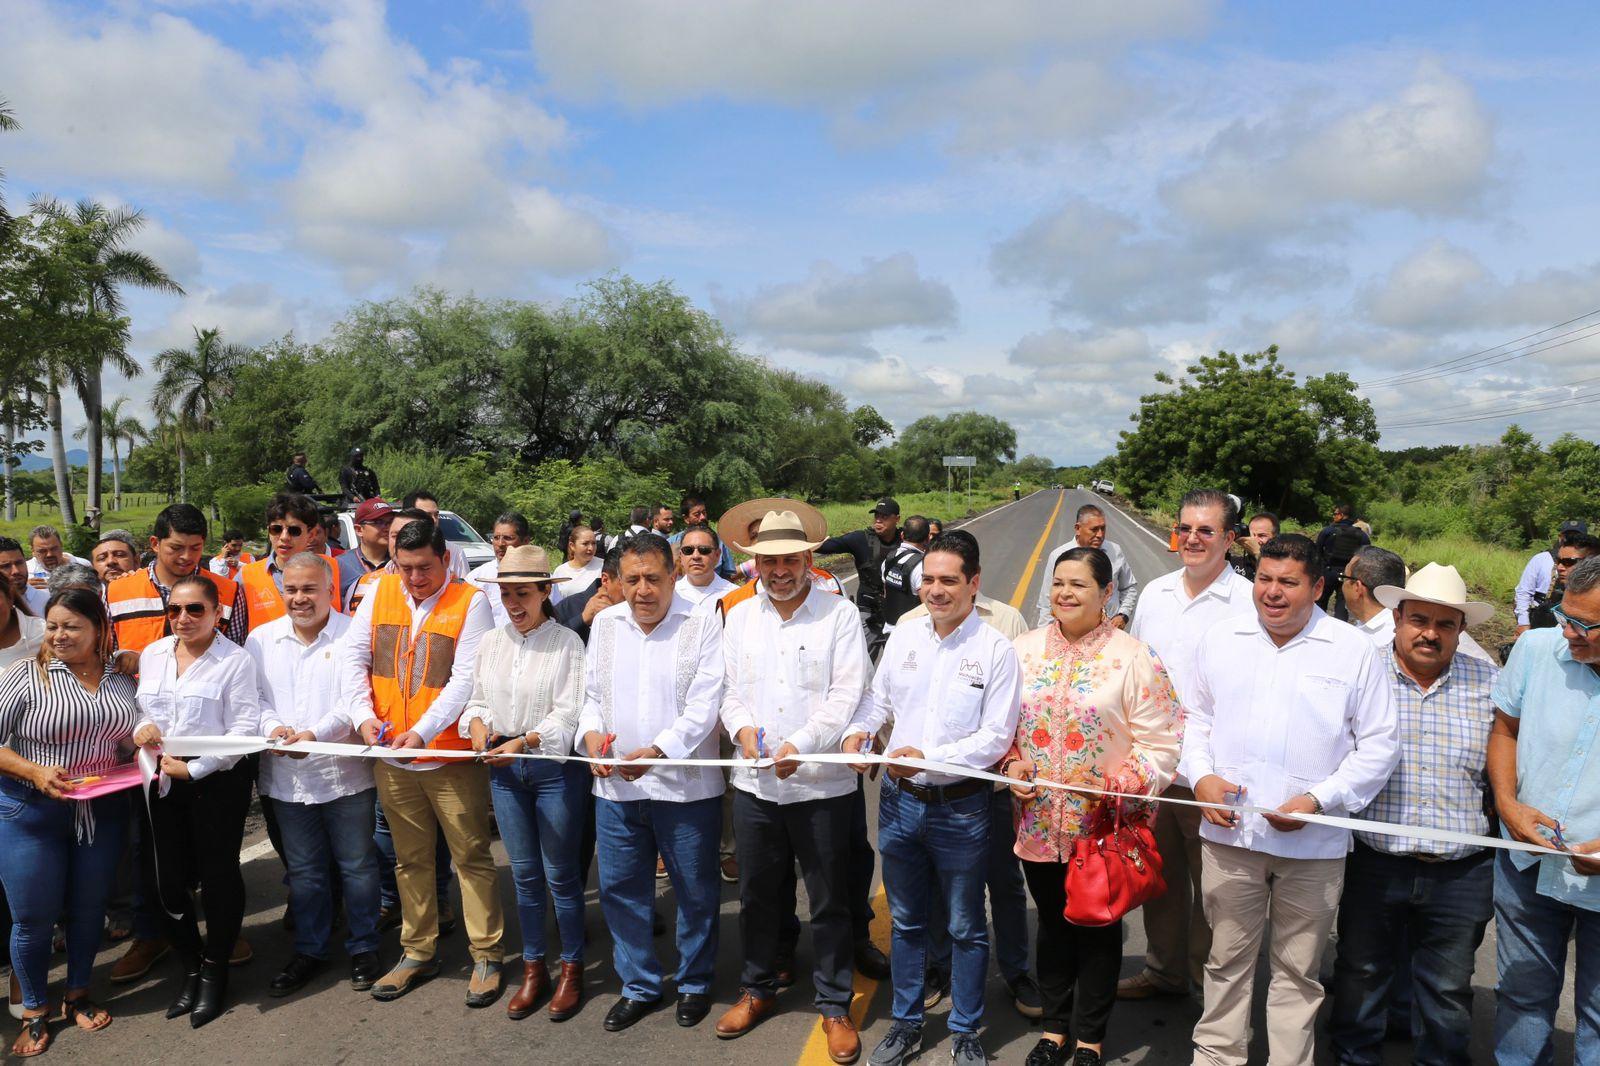 Inauguración de tramo carretero Apatzingán-El Terrero. El gobernador Alfredo Ramírez Bedolla, inauguró la rehabilitación de 34 kilómetros del tramo carretero Apatzingán-El Terrero, que tuvo una inversión de 84 millones de p